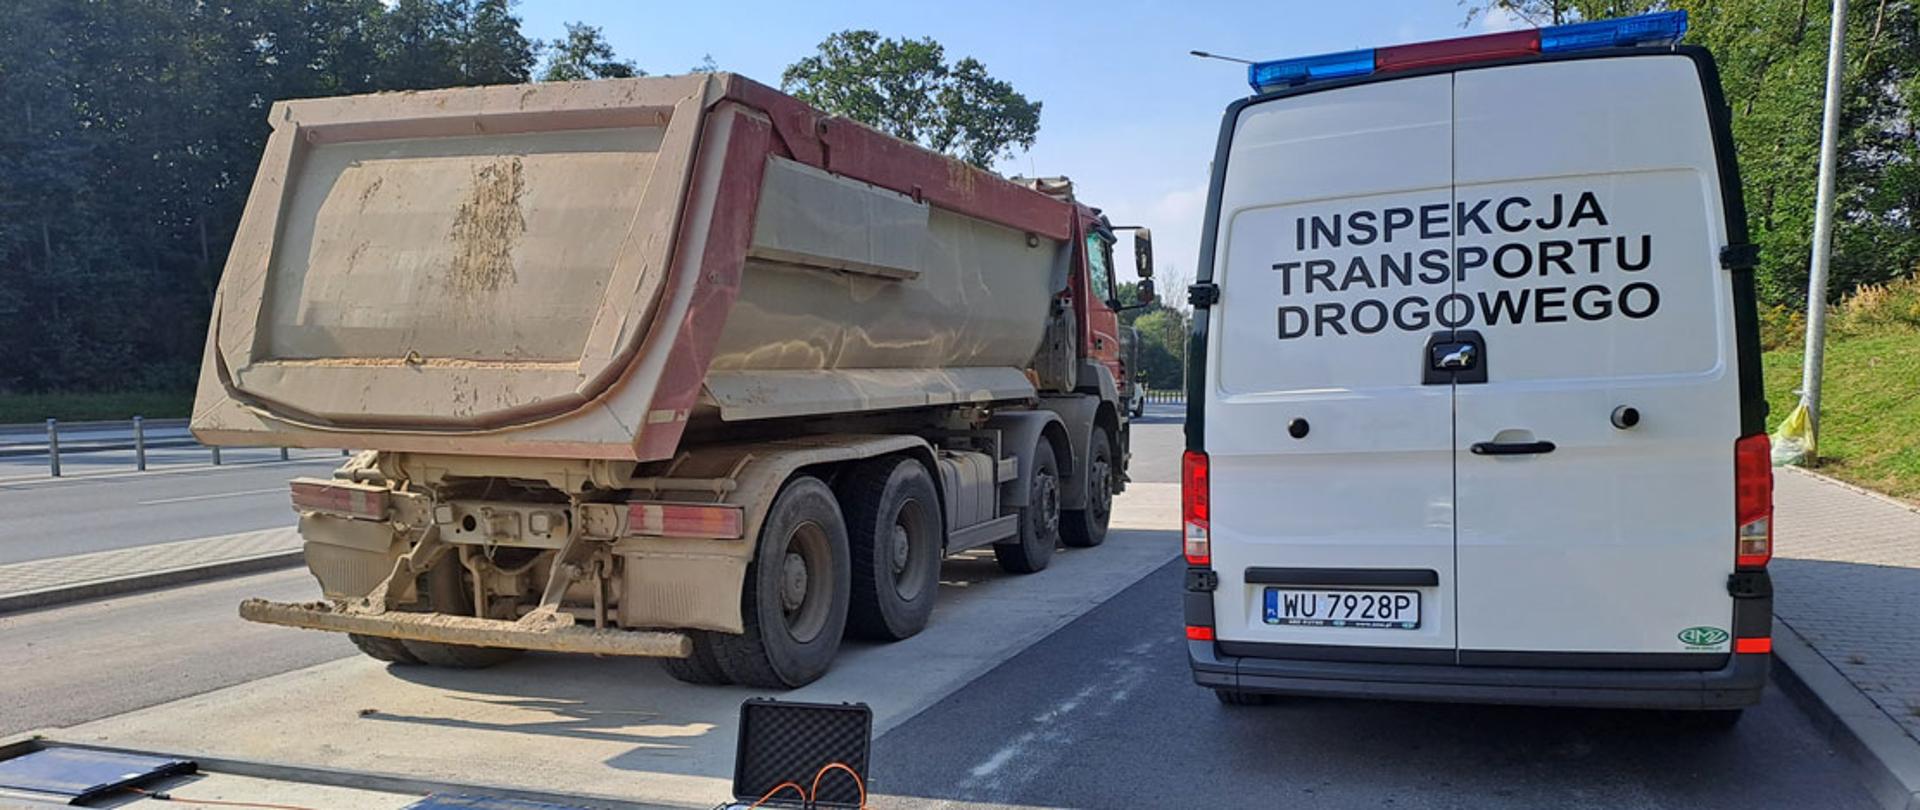 Miejsce zatrzymania do kontroli wagowej wywrotki przez patrol małopolskiej Inspekcji Transportu Drogowego.